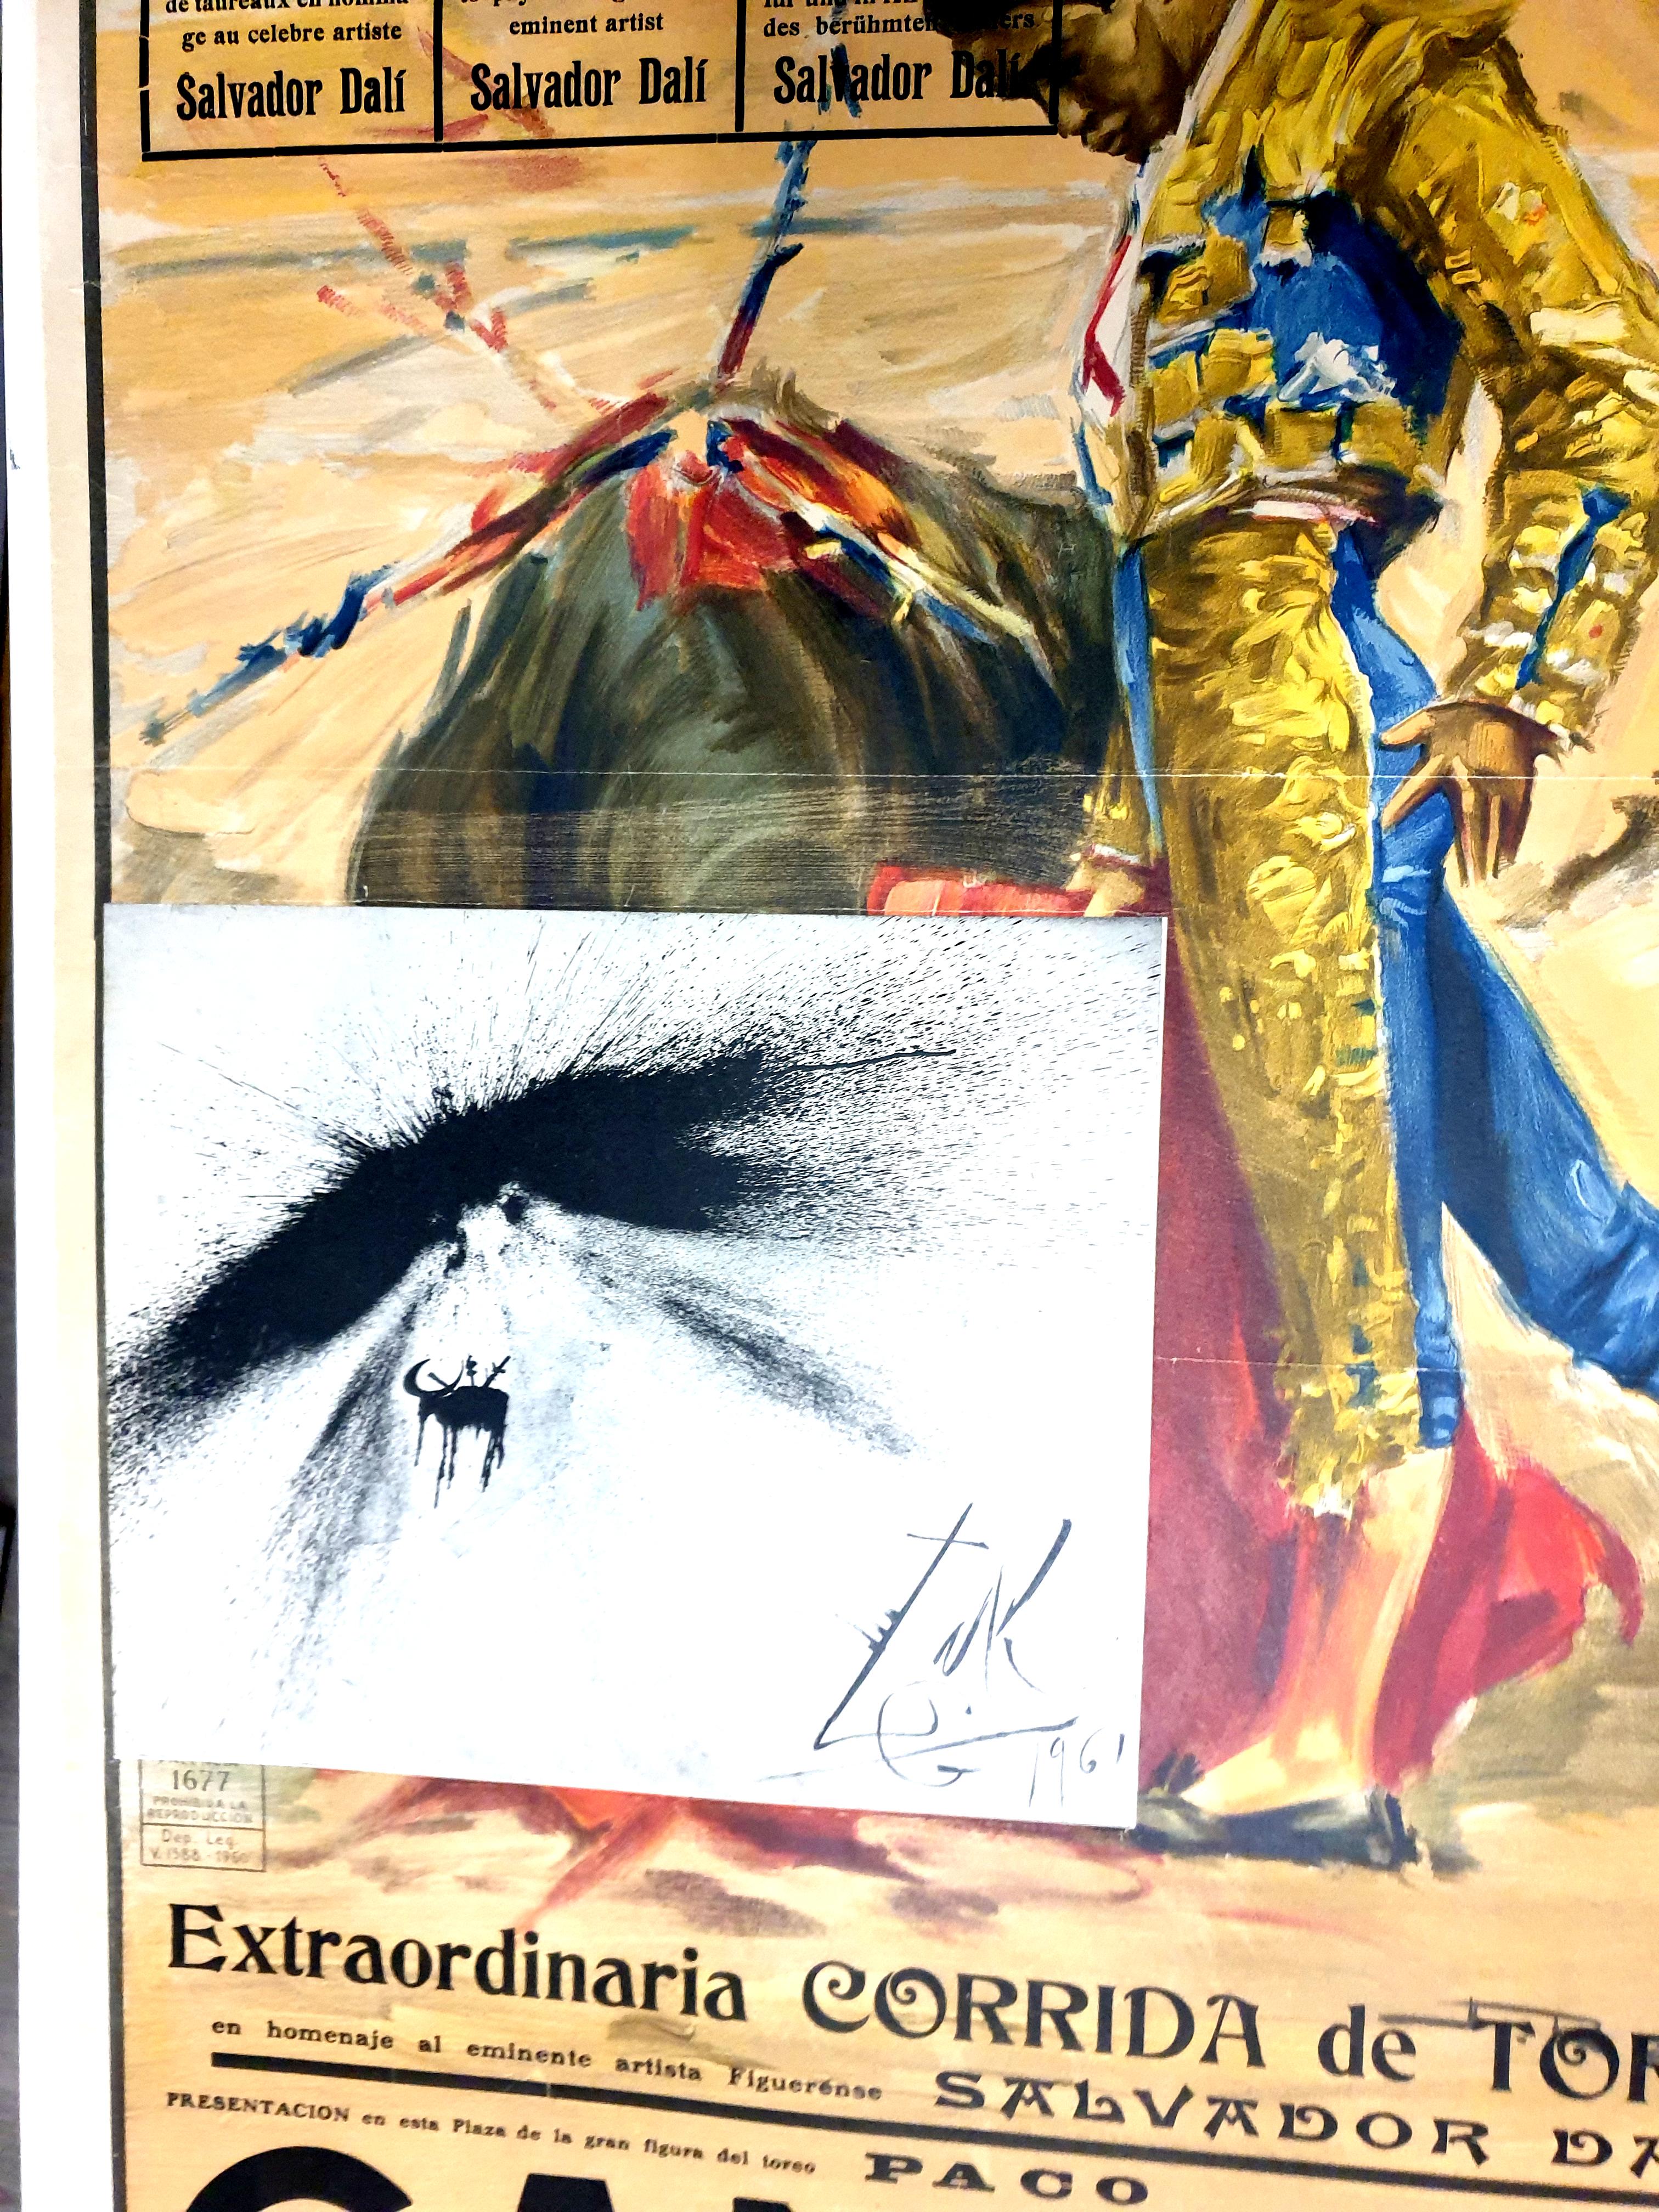 Salvador Dali - Corrida - Poster vintage avec gravure
Gravure réalisée derrière un menu au Restautant Duran lors d'un dîner d'hommage à Salvador Dali et sa femme Gala Dali à figueres Espagne, le 12 août 1961.
Dimensions : 105 x 55 cm
1961
Très rare